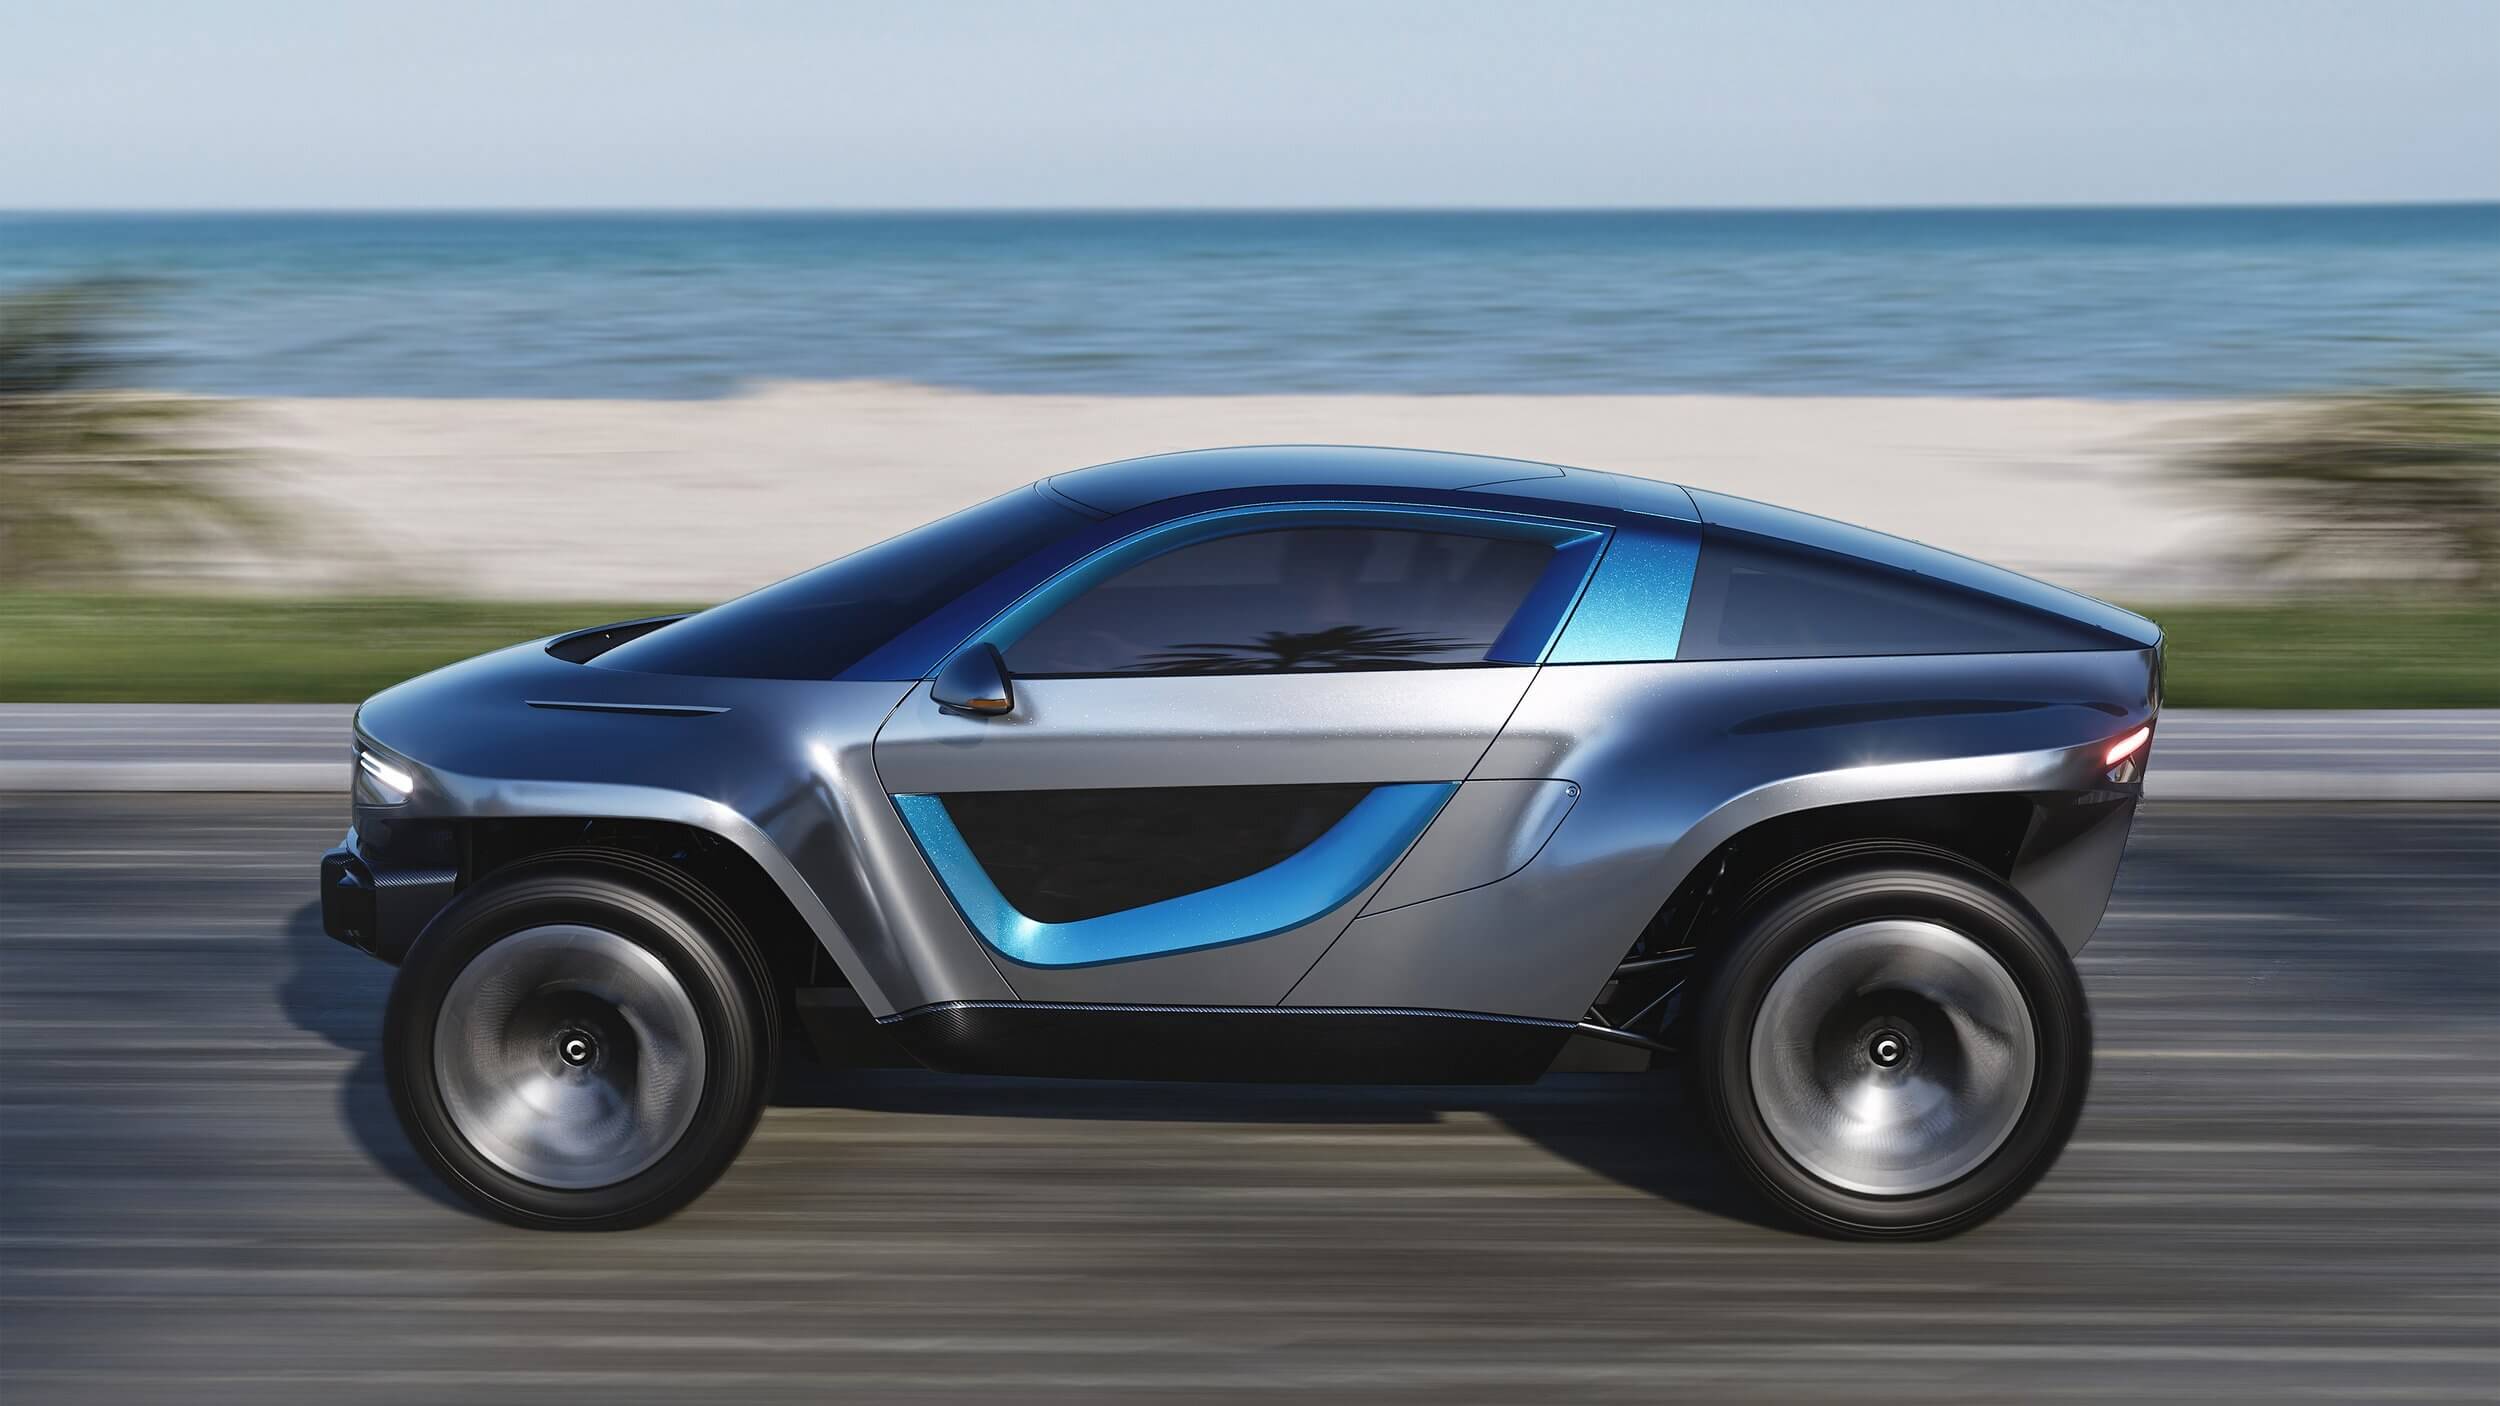 Former Jaguar designer announces futuristic electric SUV Skye